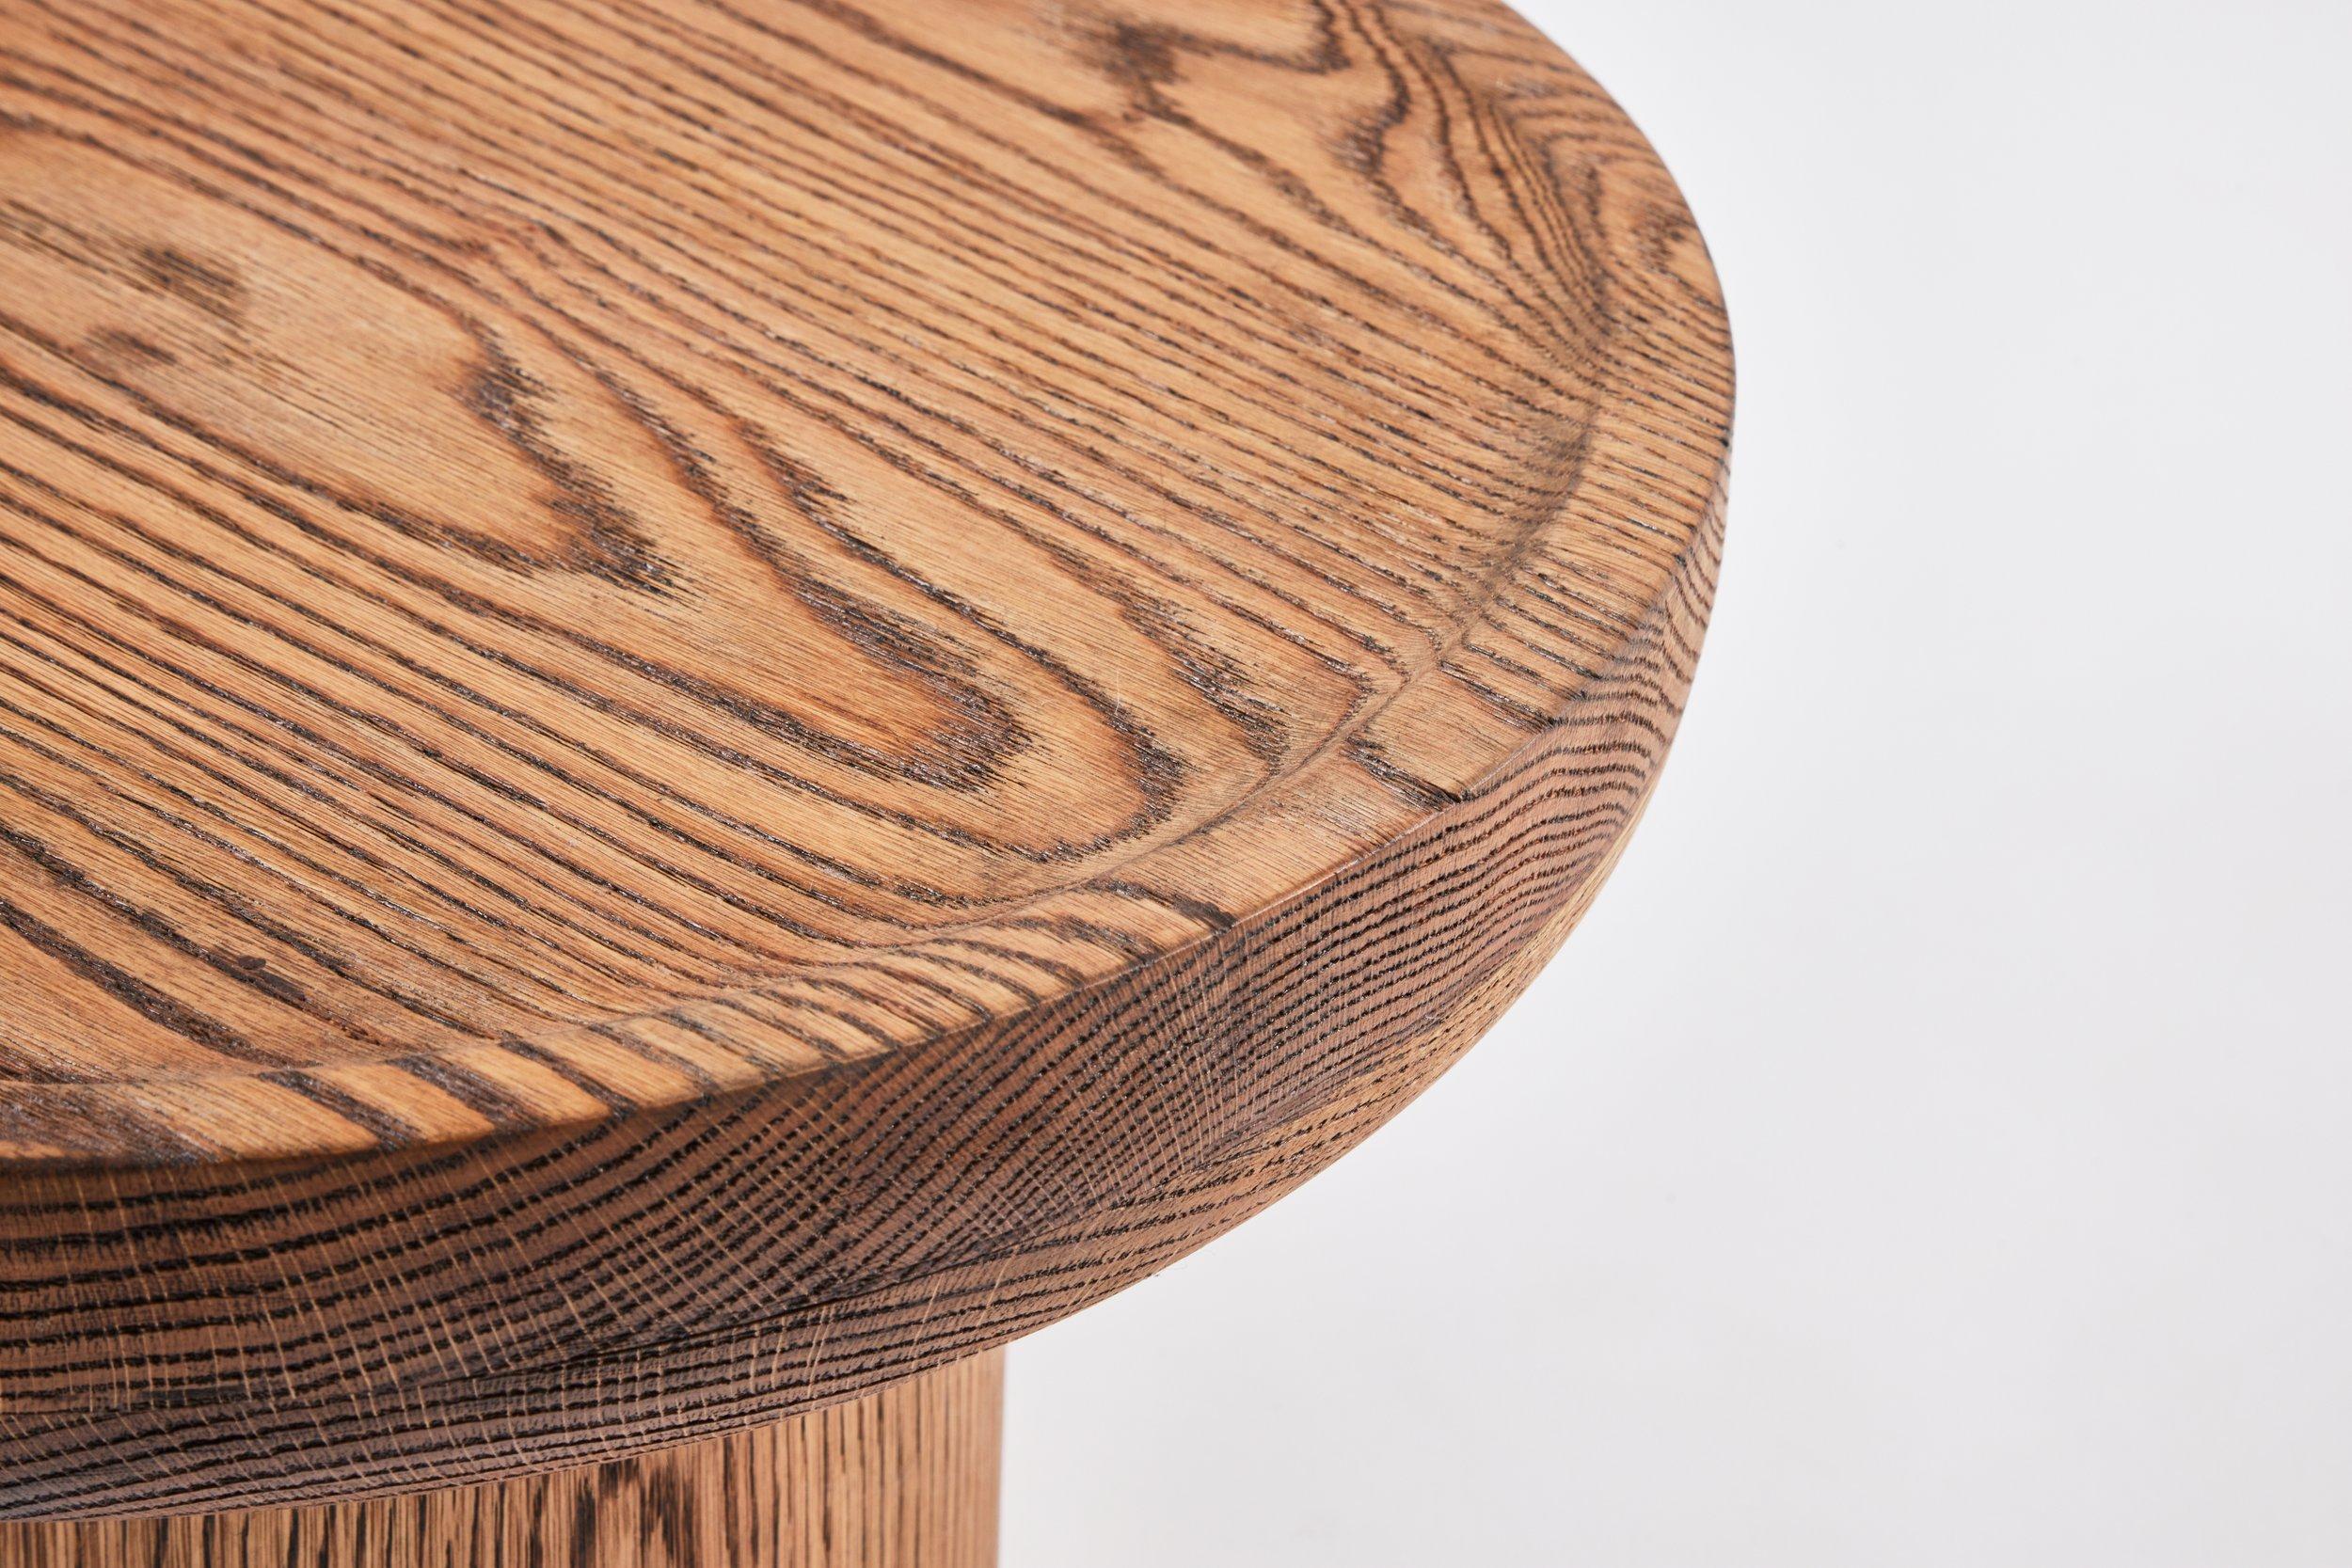 Wood Findley Modern Round Oak Side Table in Tanned Oak Finish by Martin & Brockett For Sale